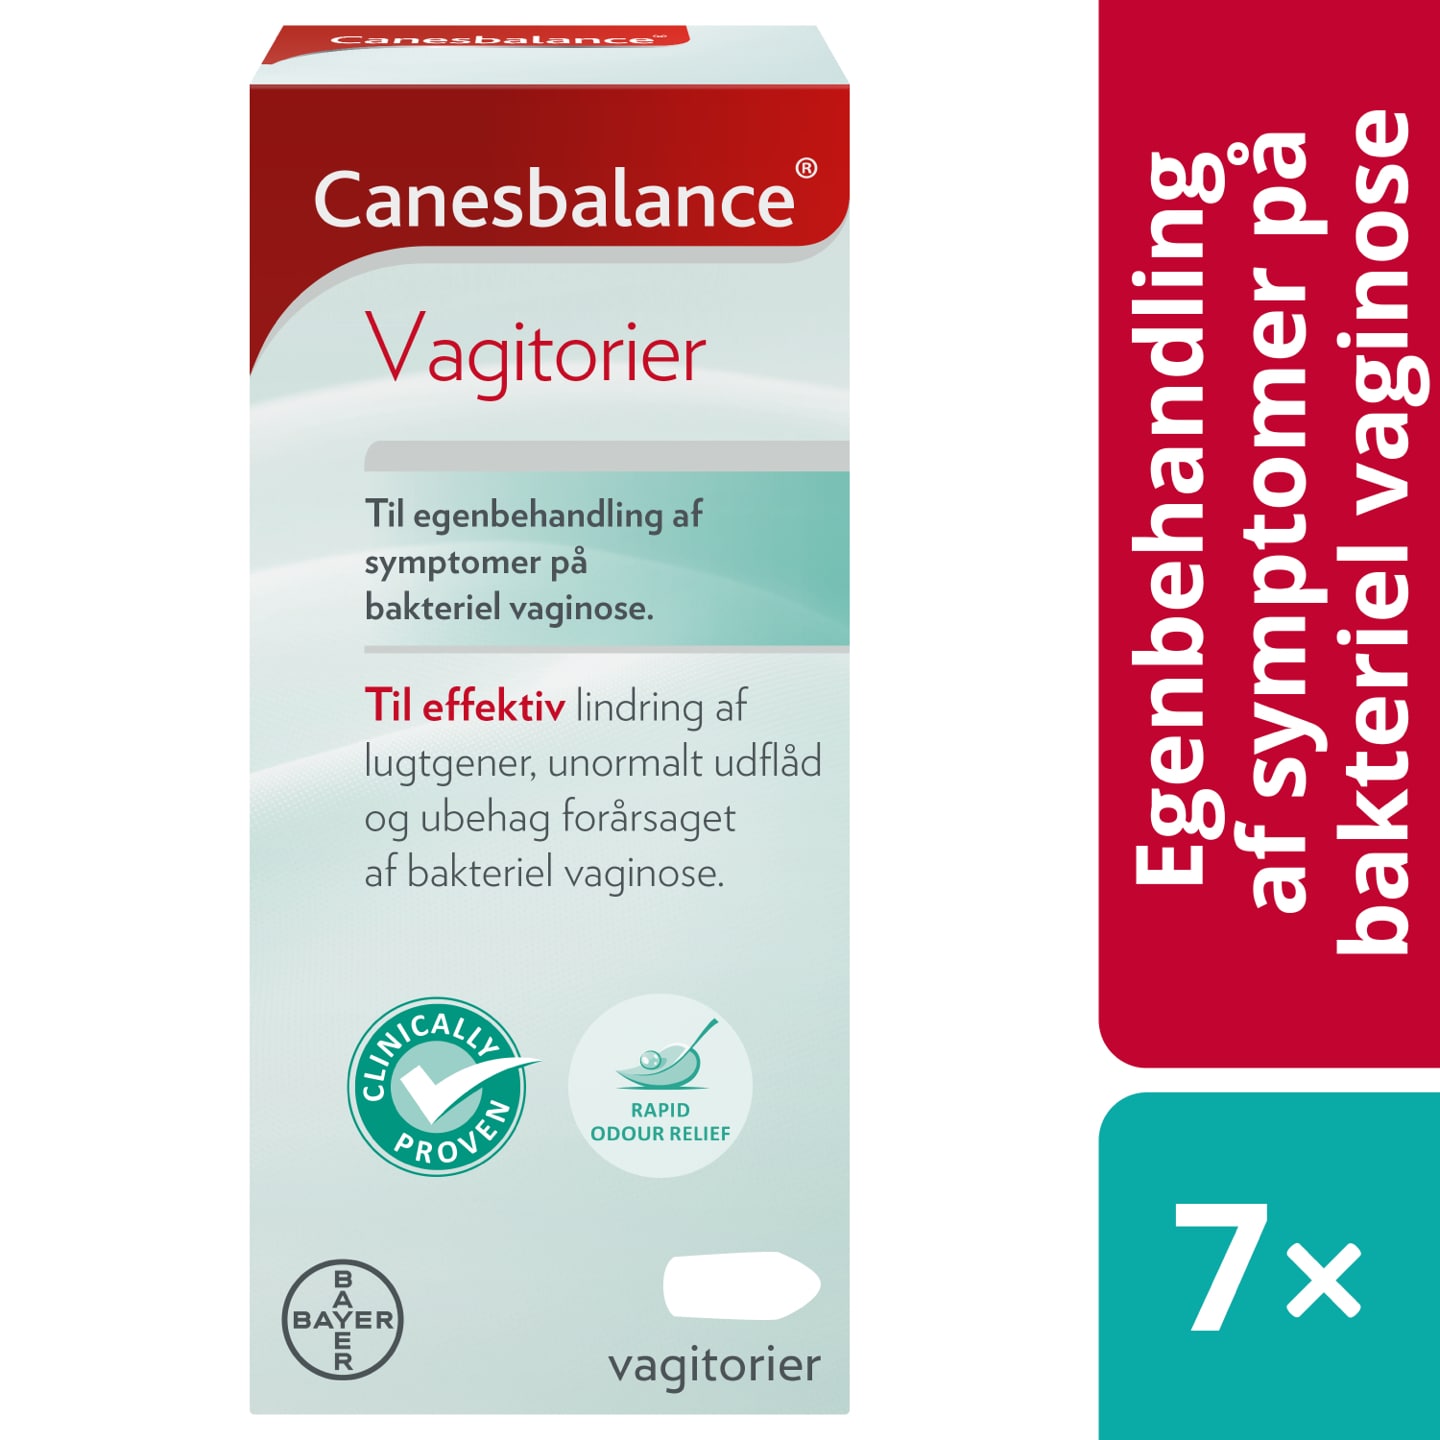 Canesbalance vagitorier til egenbehandling af symptomer på bakteriel vaginose